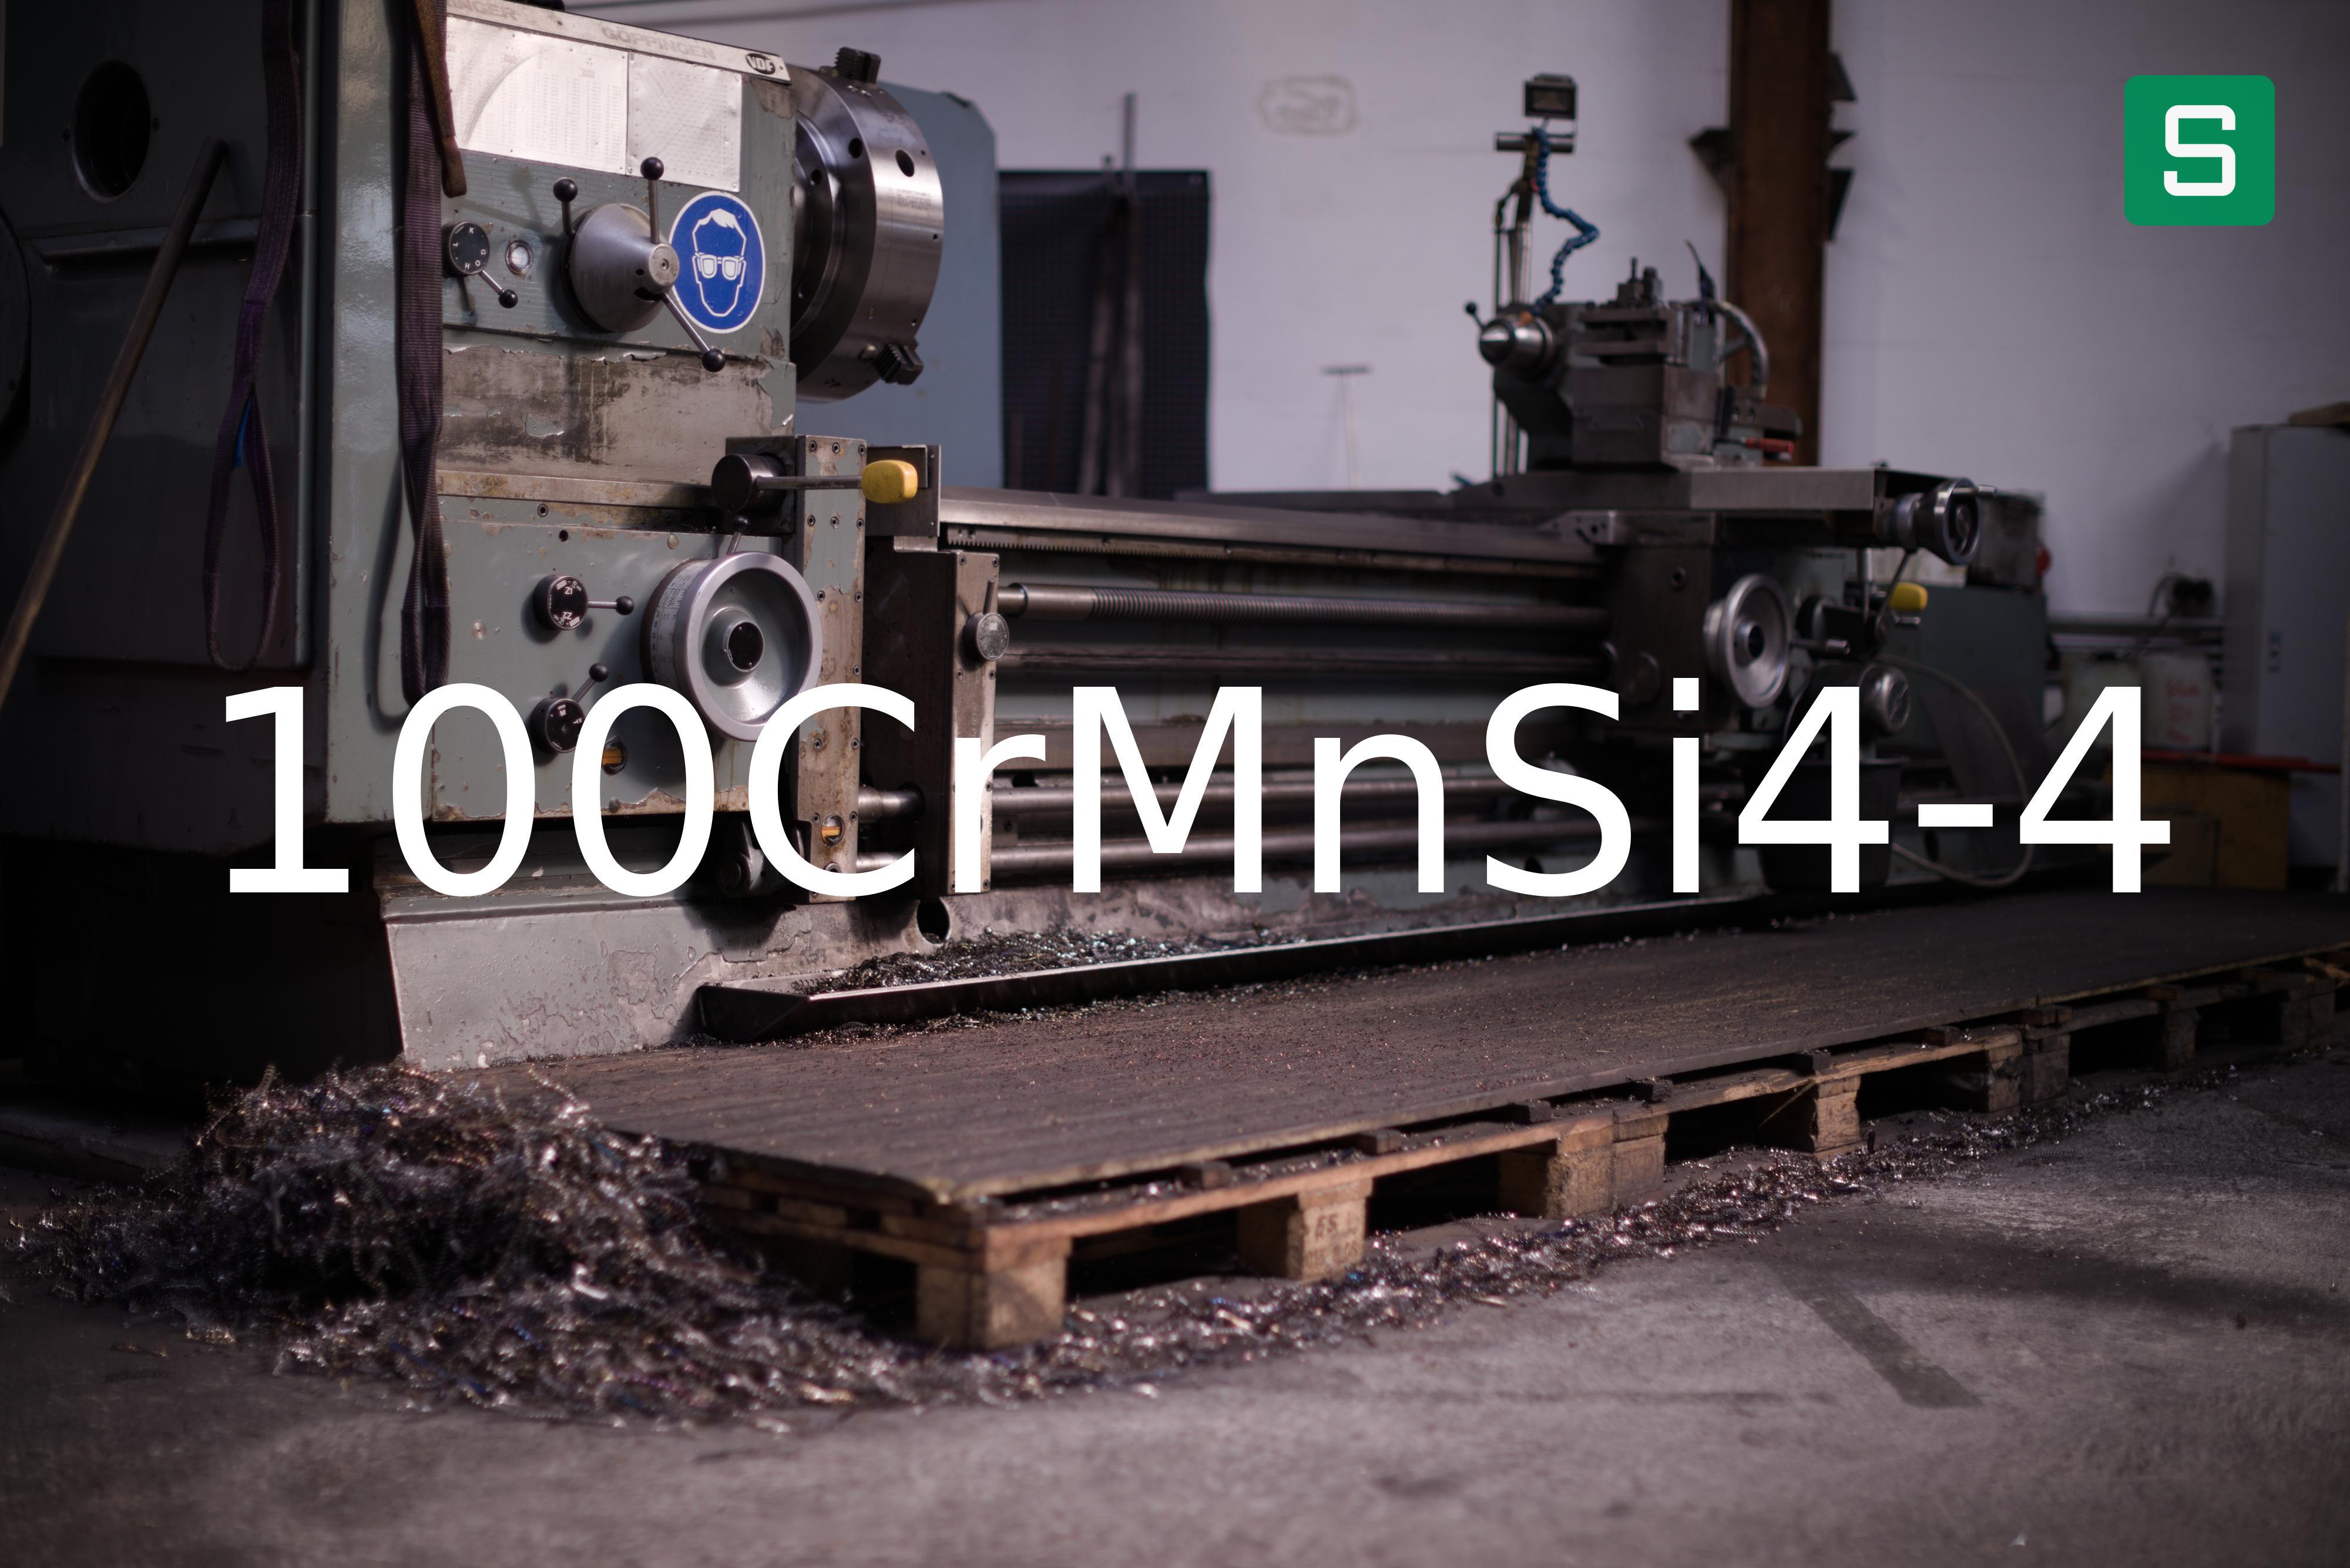 Steel Material: 100CrMnSi4-4